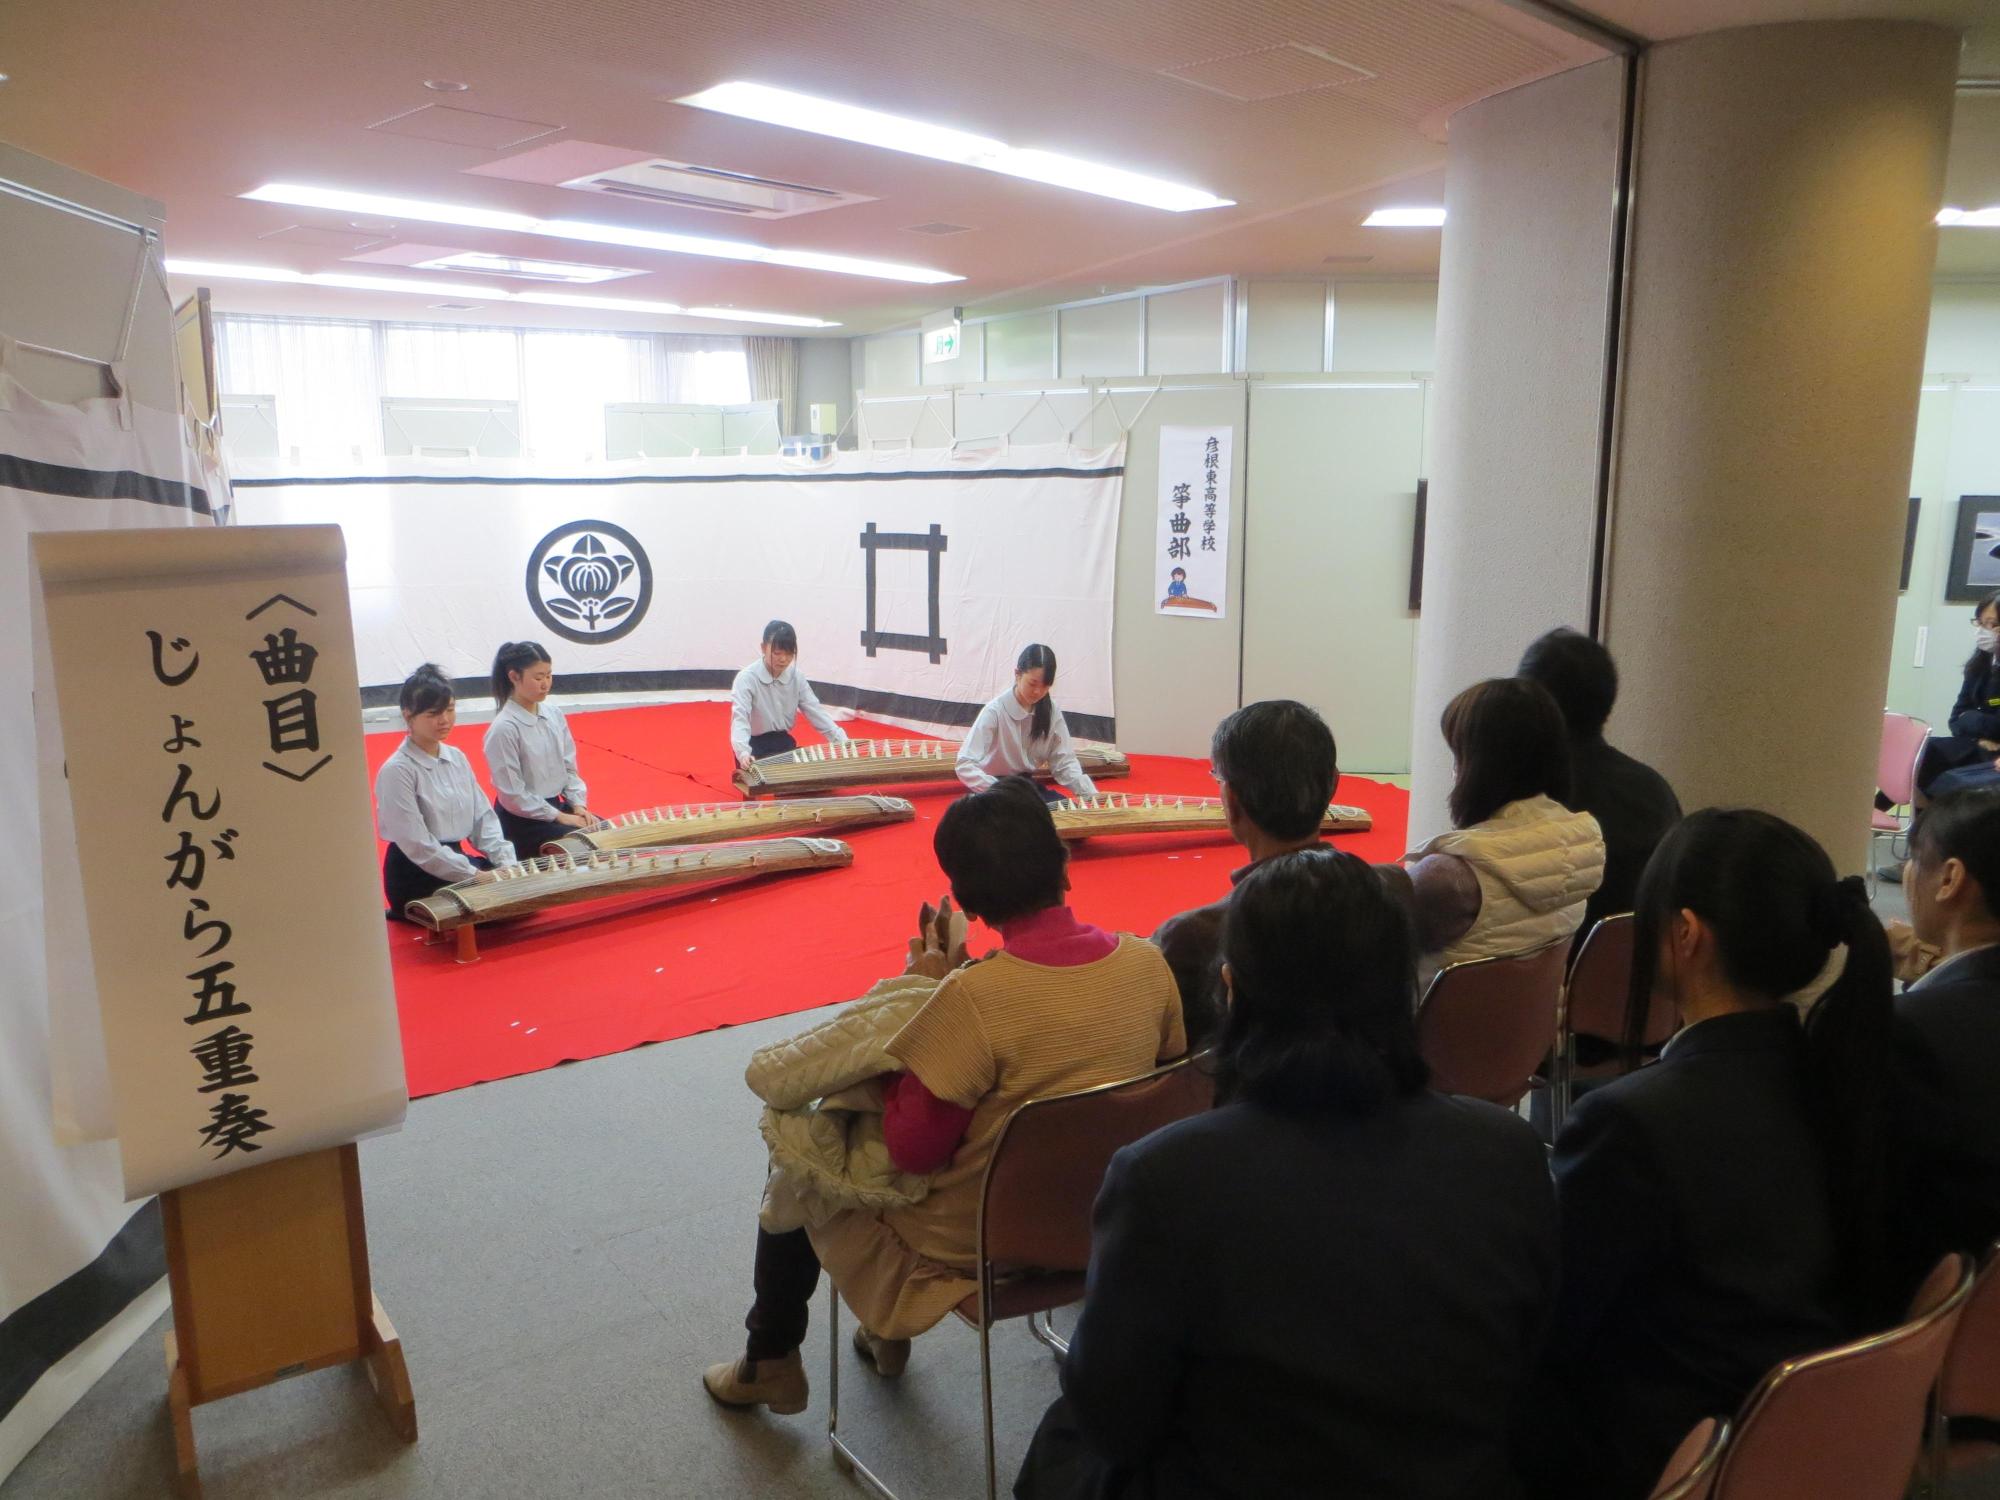 彦根東高等学校箏曲部の生徒による箏曲演奏会場の全体写真